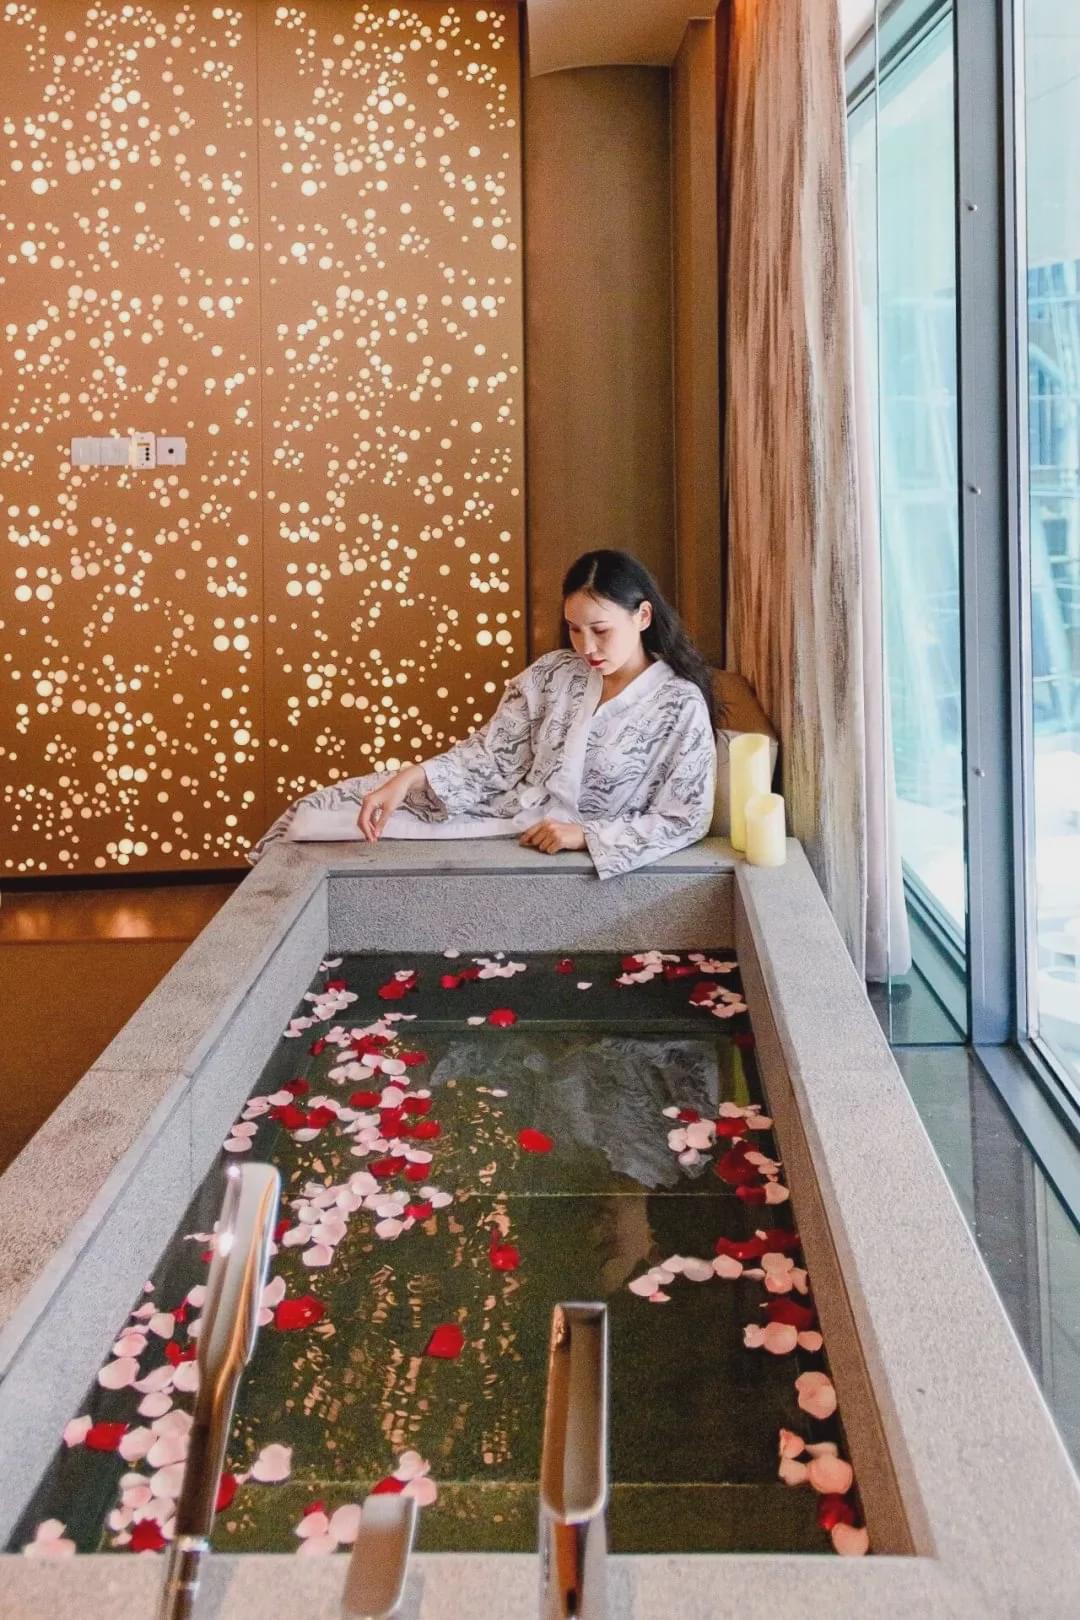 spa是来自日本的水疗品牌,整个环境颇具京都风味,连浴袍都是日式风格